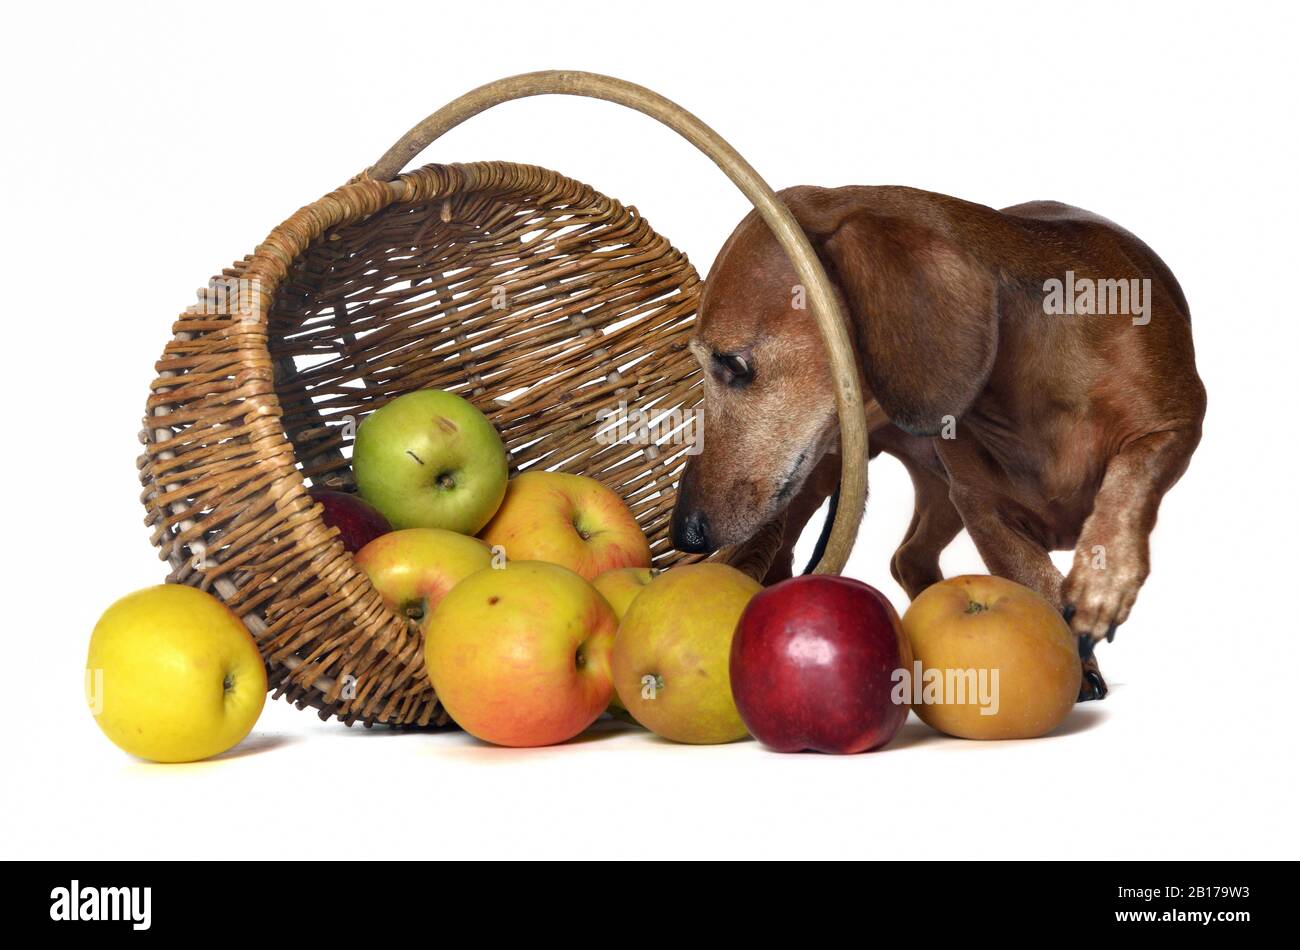 Dachshund de pelo corto, perro de salchicha De pelo Corto, perro doméstico (Canis lupus f. familiaris), el hombre mira curiosamente desde detrás de una cesta de manzana Foto de stock